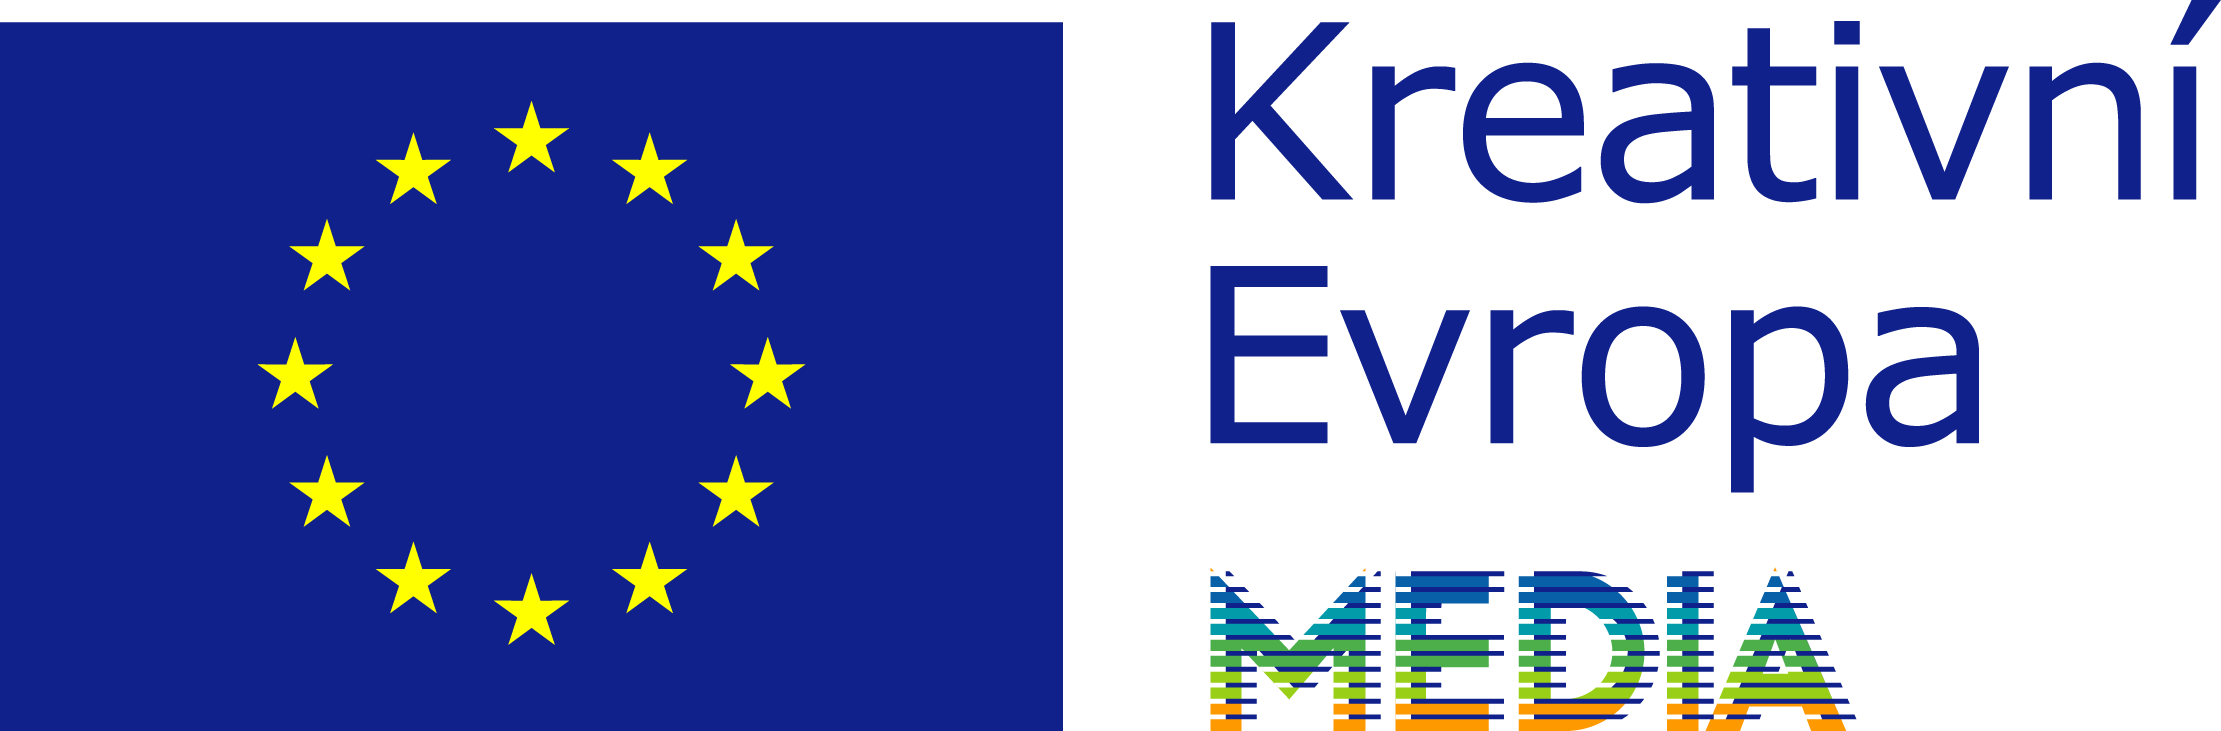 EU flag Crea EU MEDIA CS